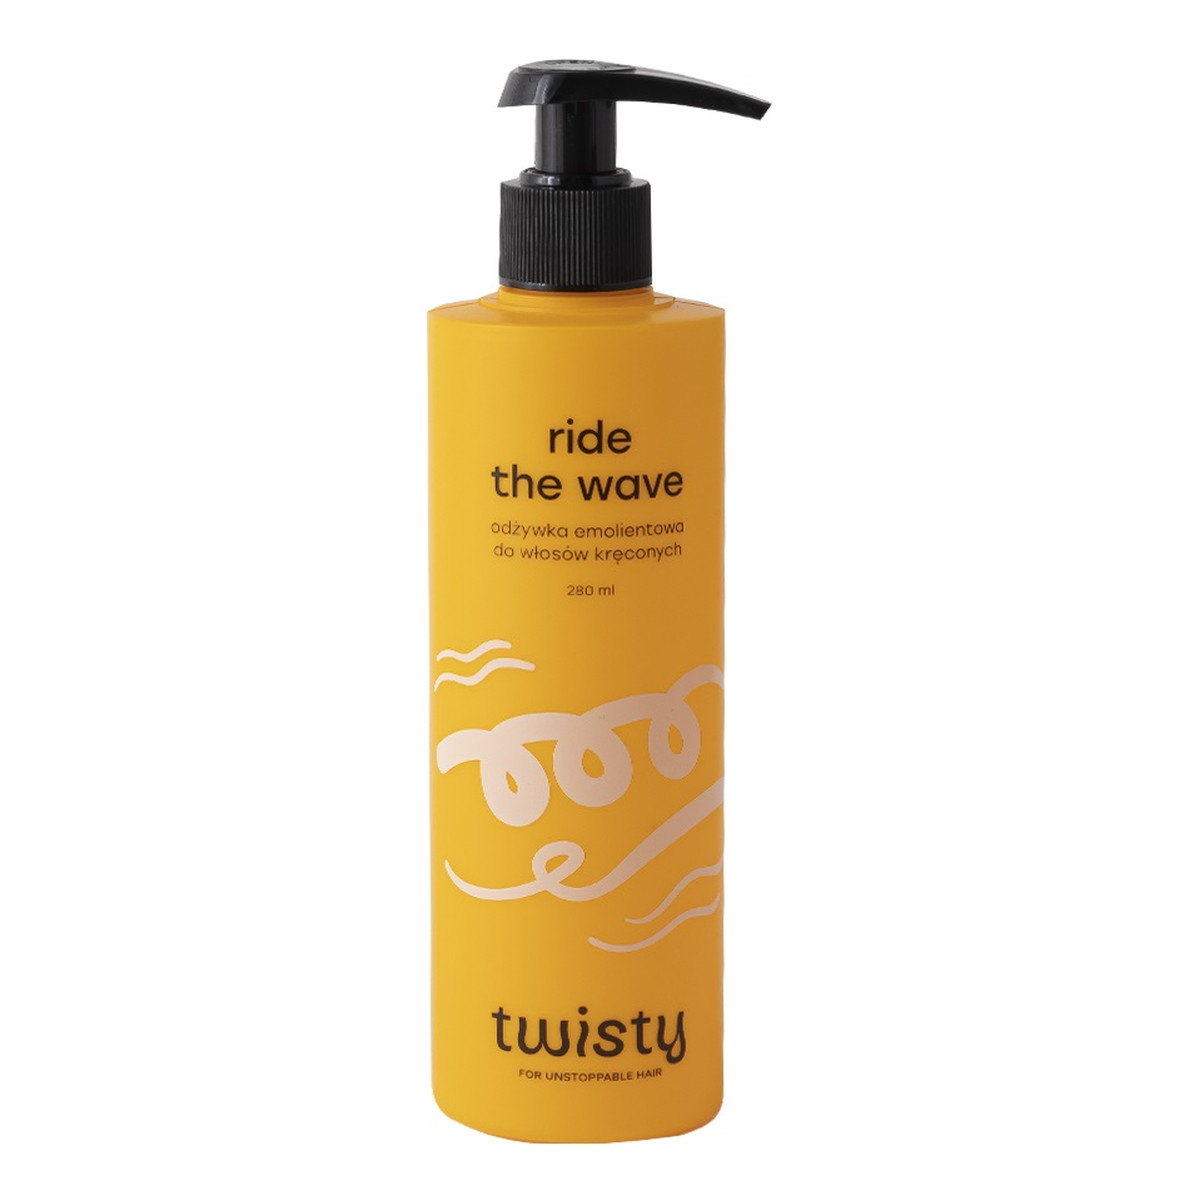 Twisty Ride the wave odżywka emolientowa do włosów kręconych 280ml